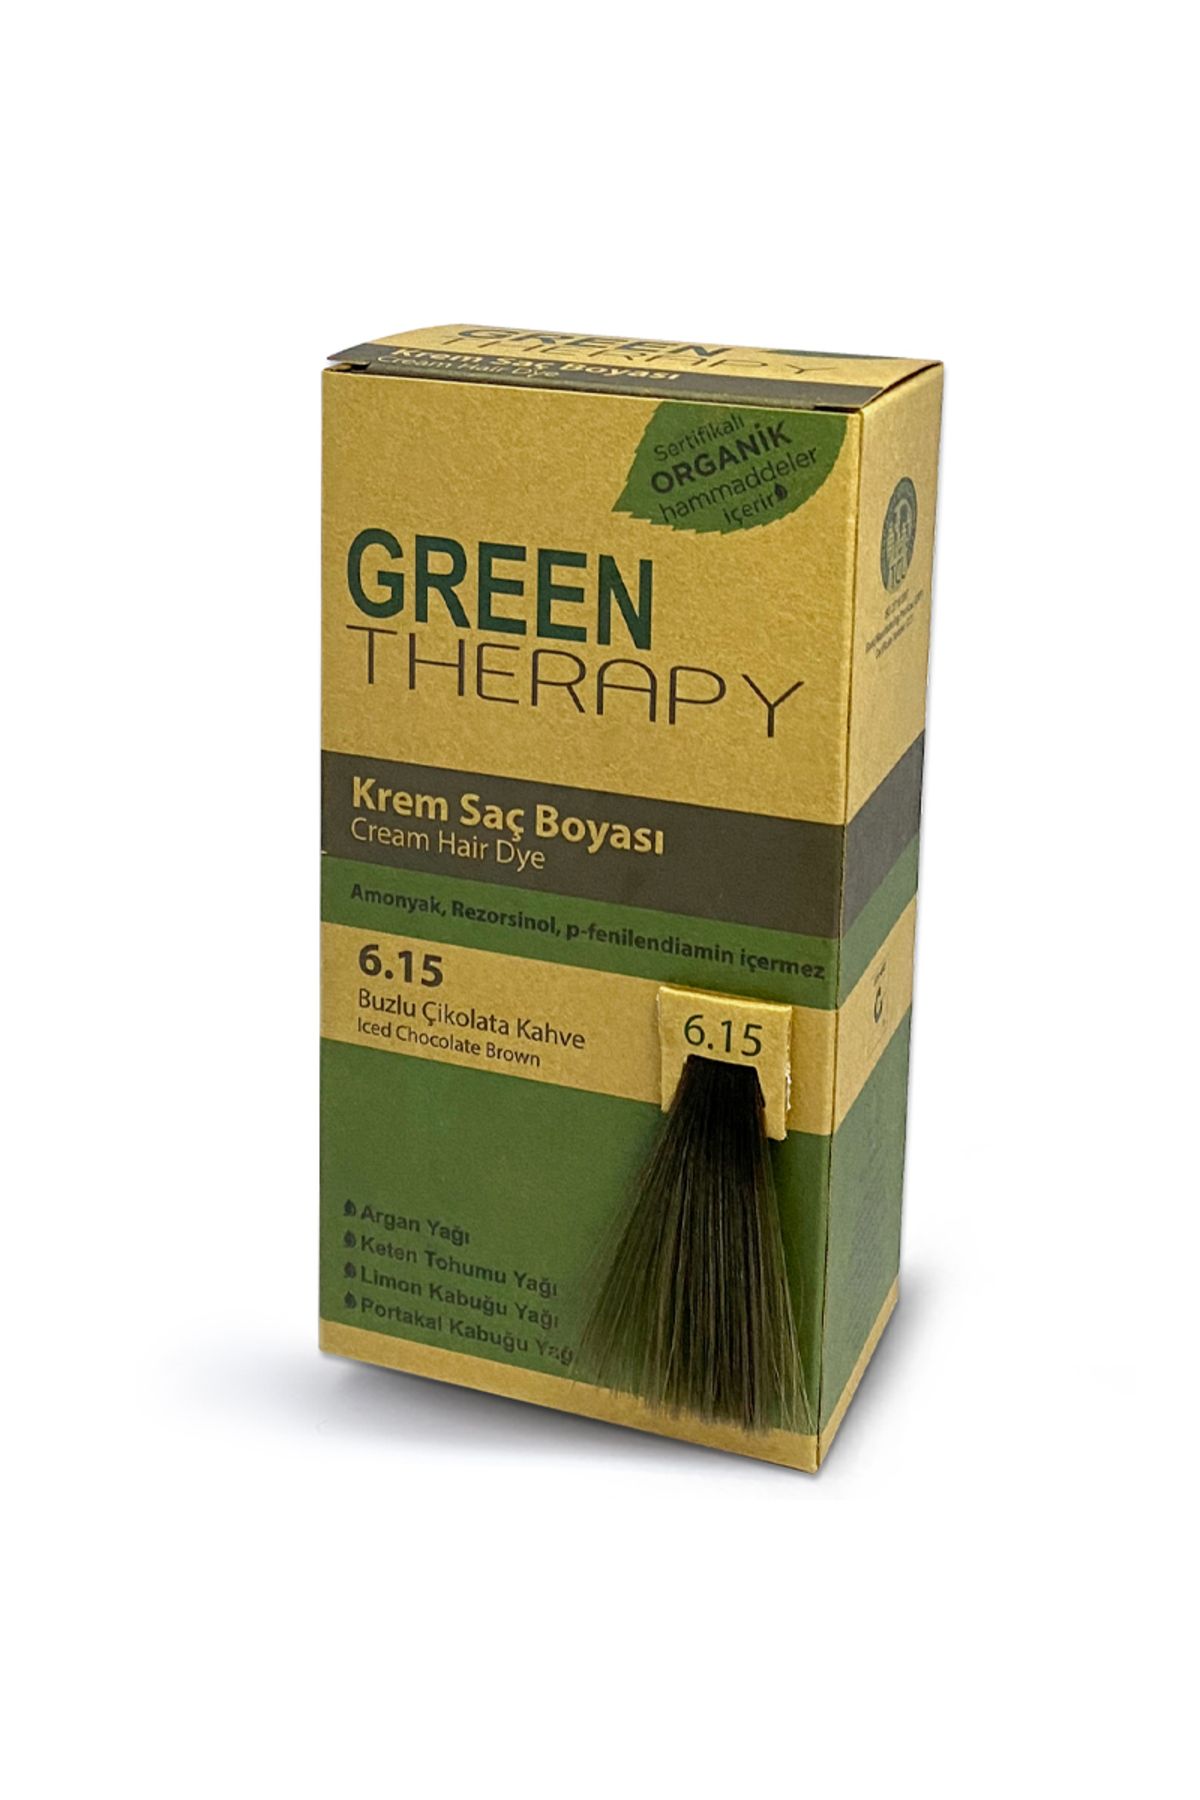 Green Therapy Krem Saç Boyası 6.15 Buzlu Çikolata Kahve